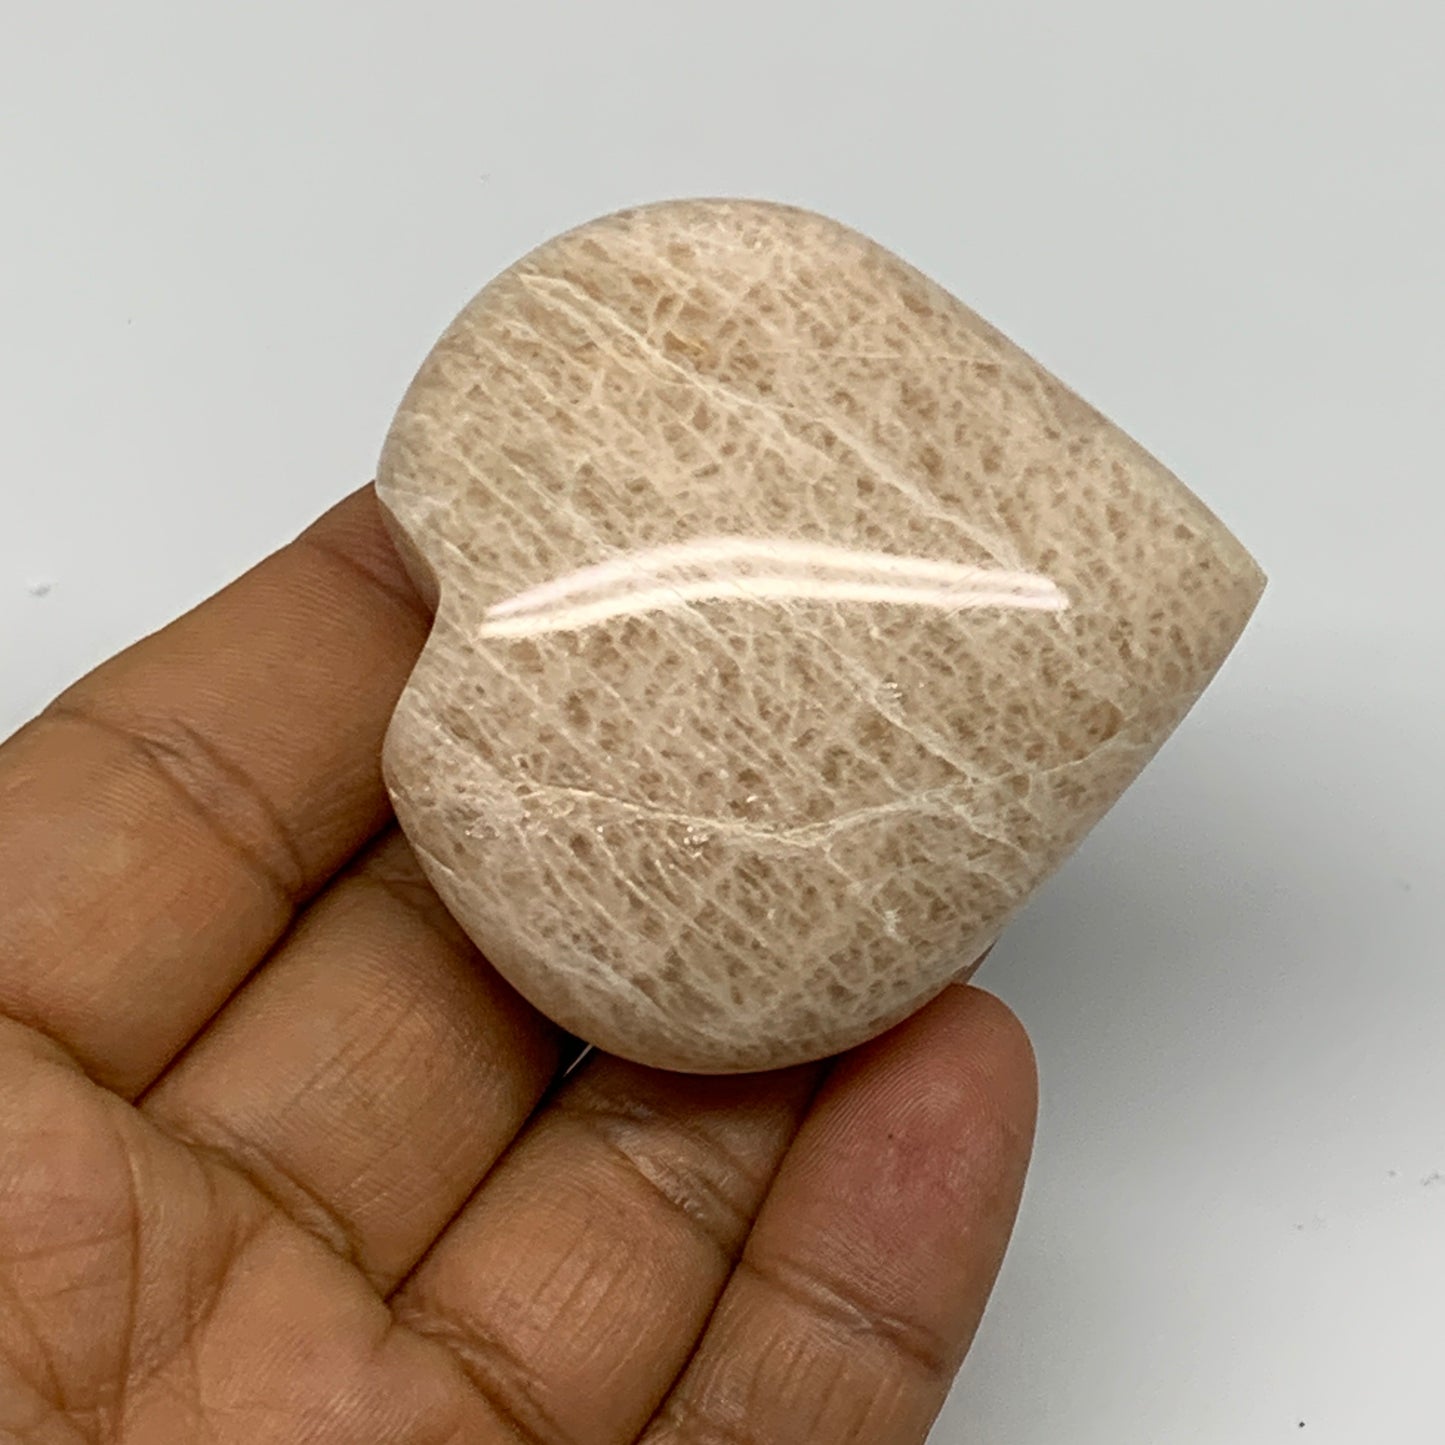 84.3g, 2.1"x2.1"x0.9", Peach Moonstone Heart Crystal Polished Gemstone, B28121